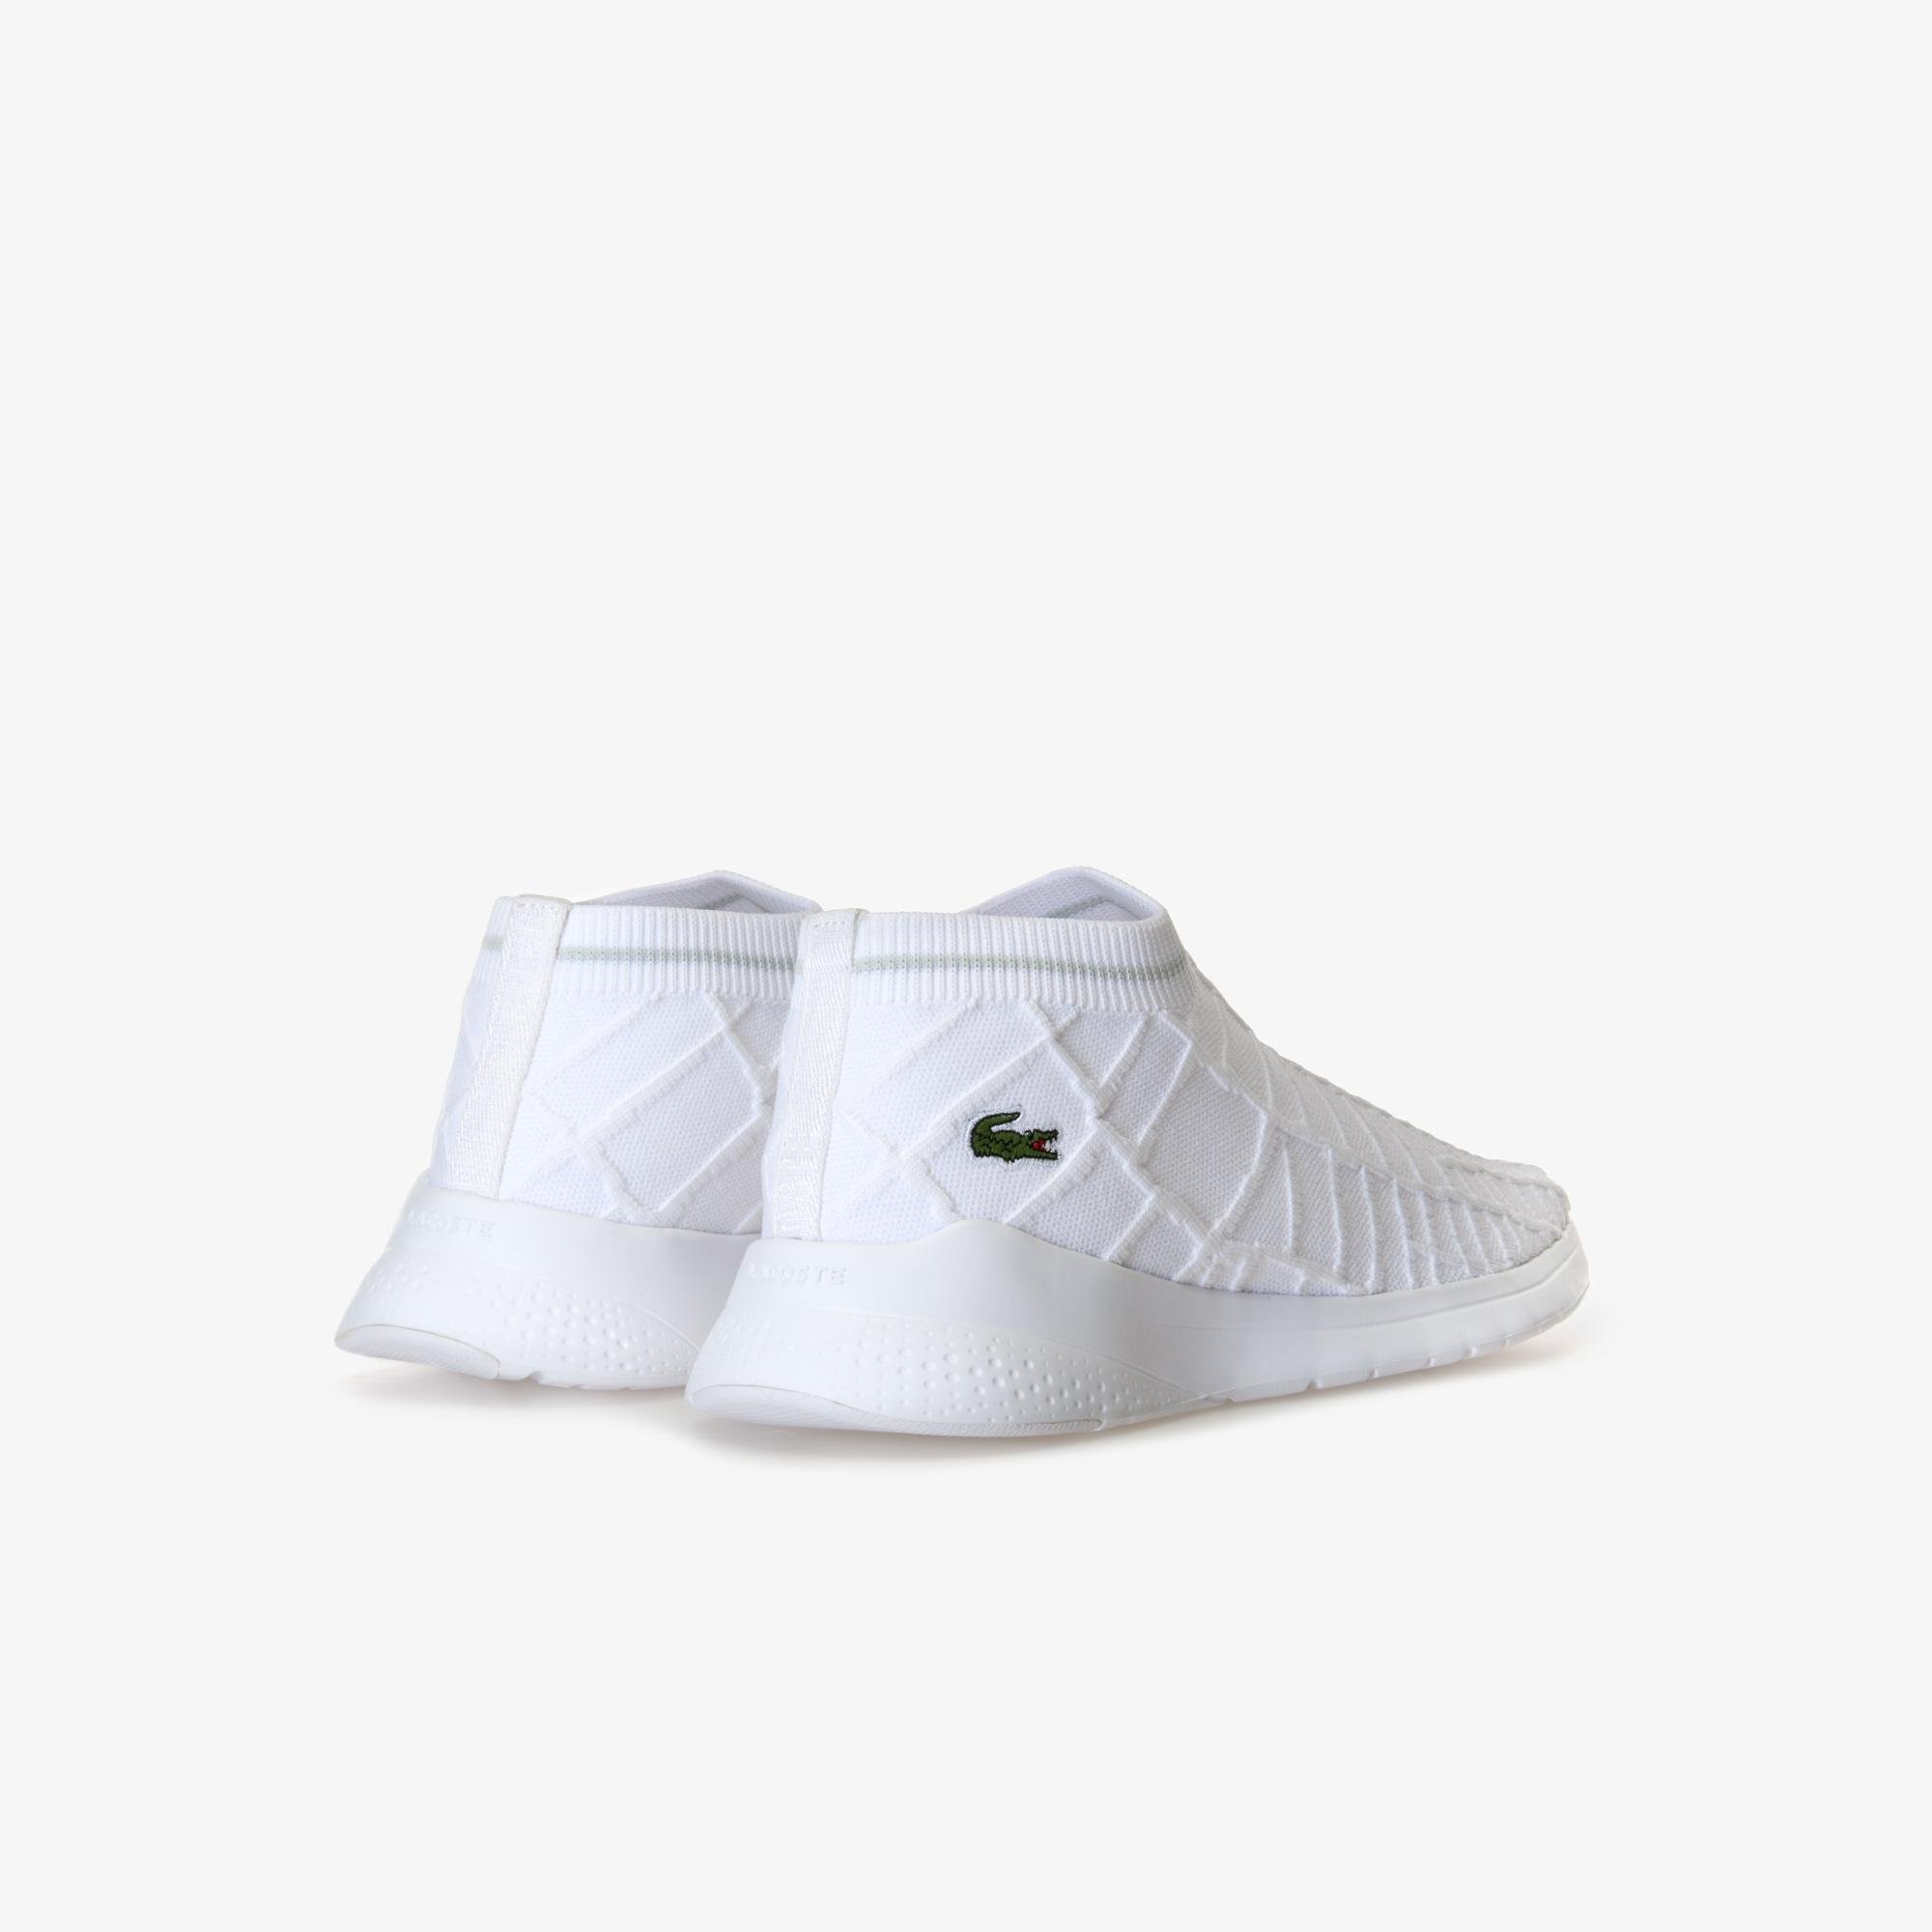 Lacoste LT Fit Sock 119 1 Women's Sneakers